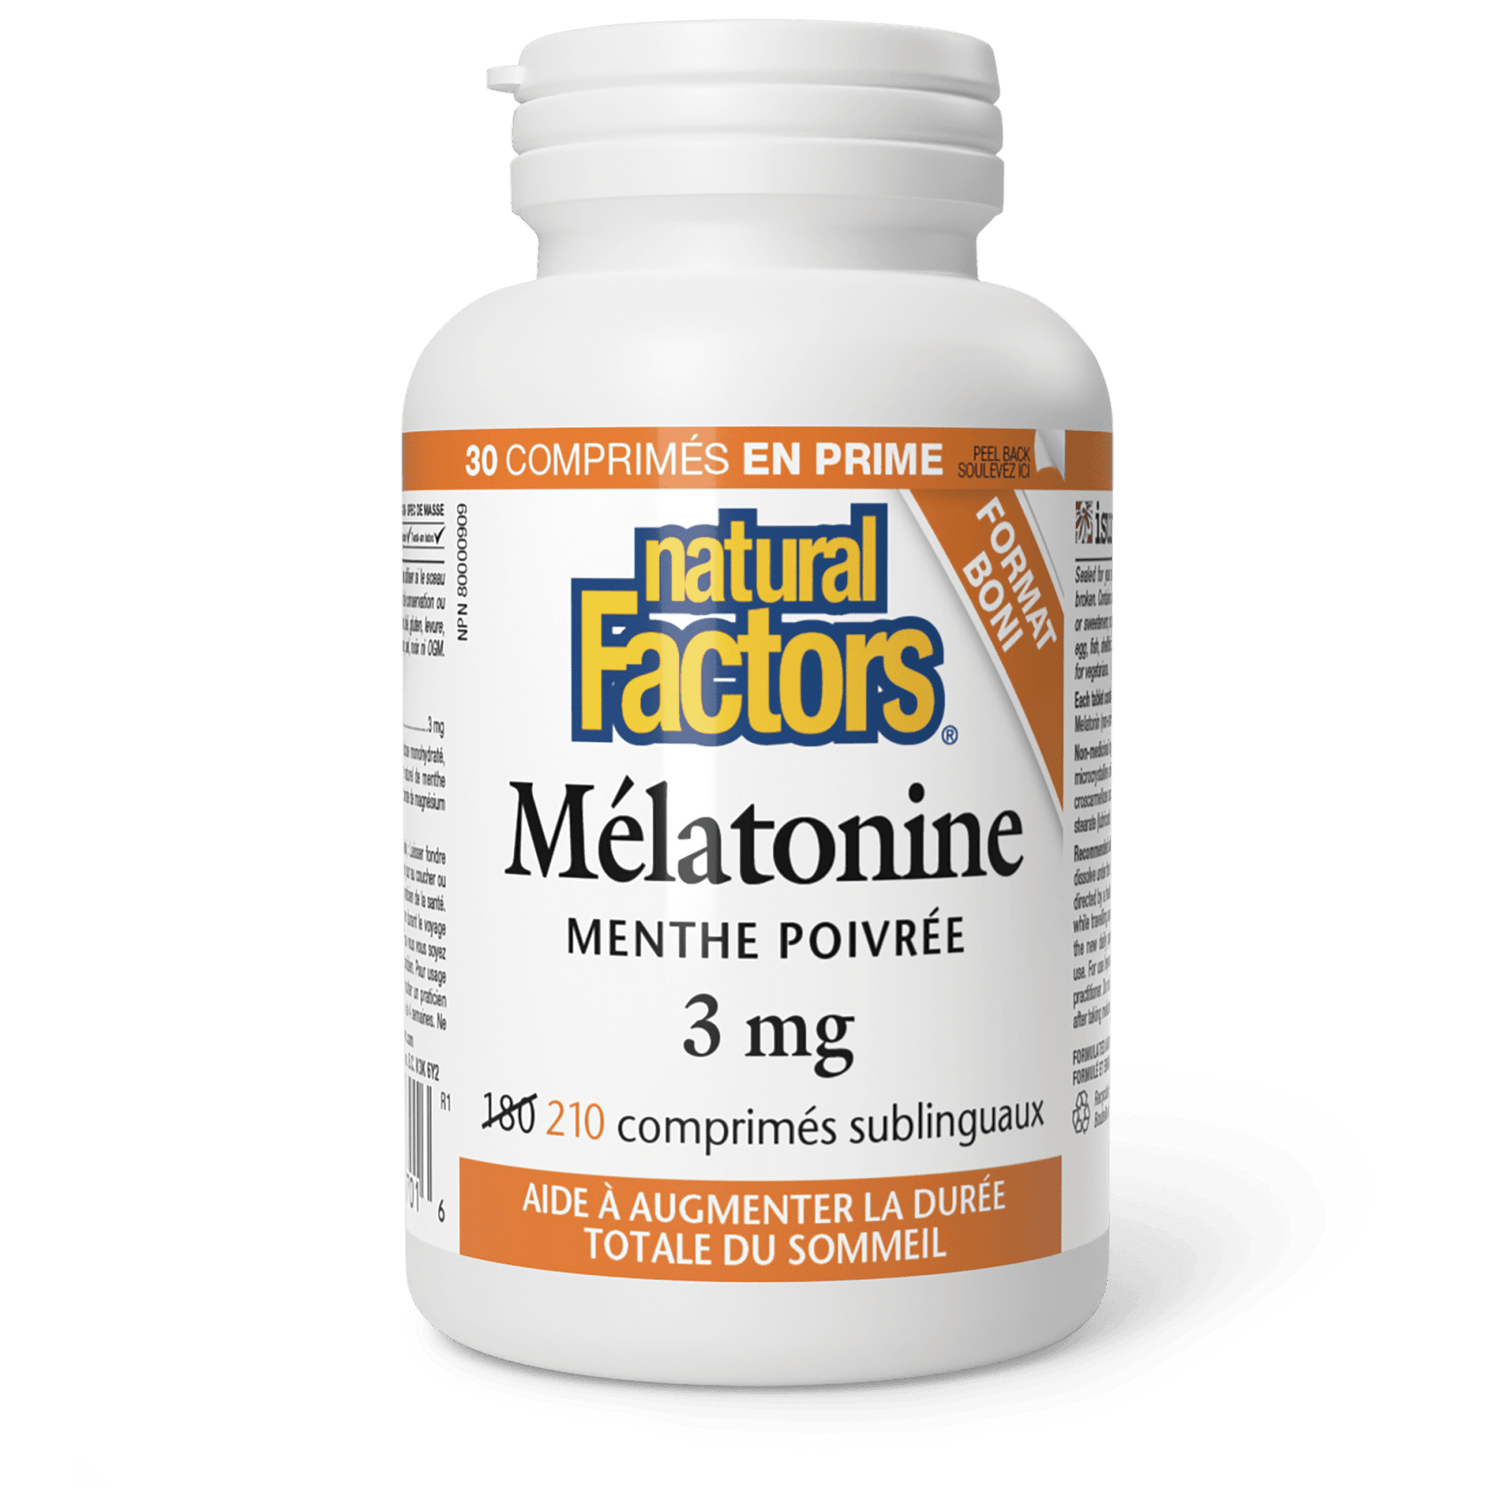 Mélatonine 3 mg, menthe poivrée, Natural Factors|v|image|8701